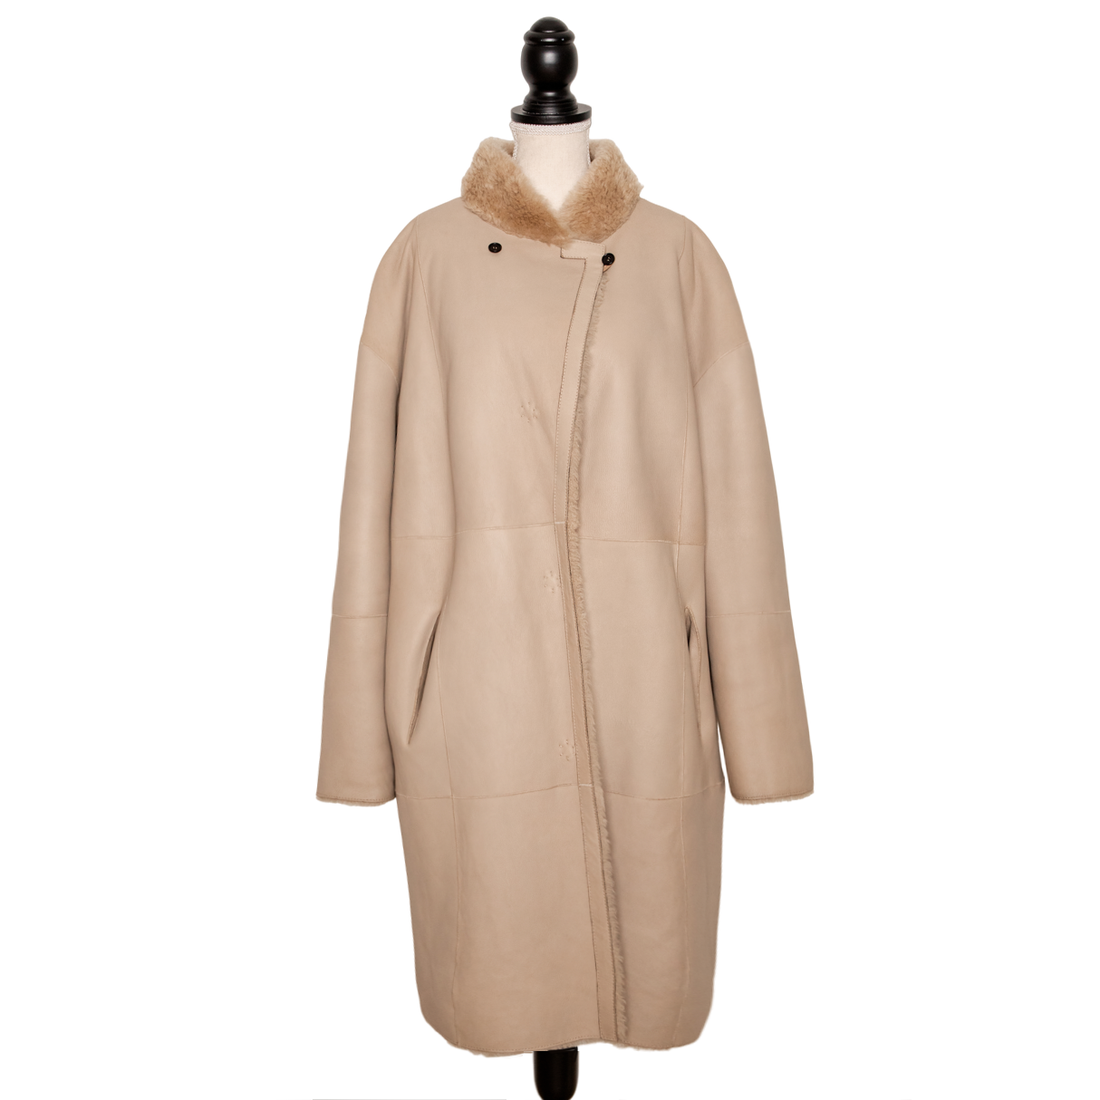 Windsor lambskin reversible coat in an oversize look